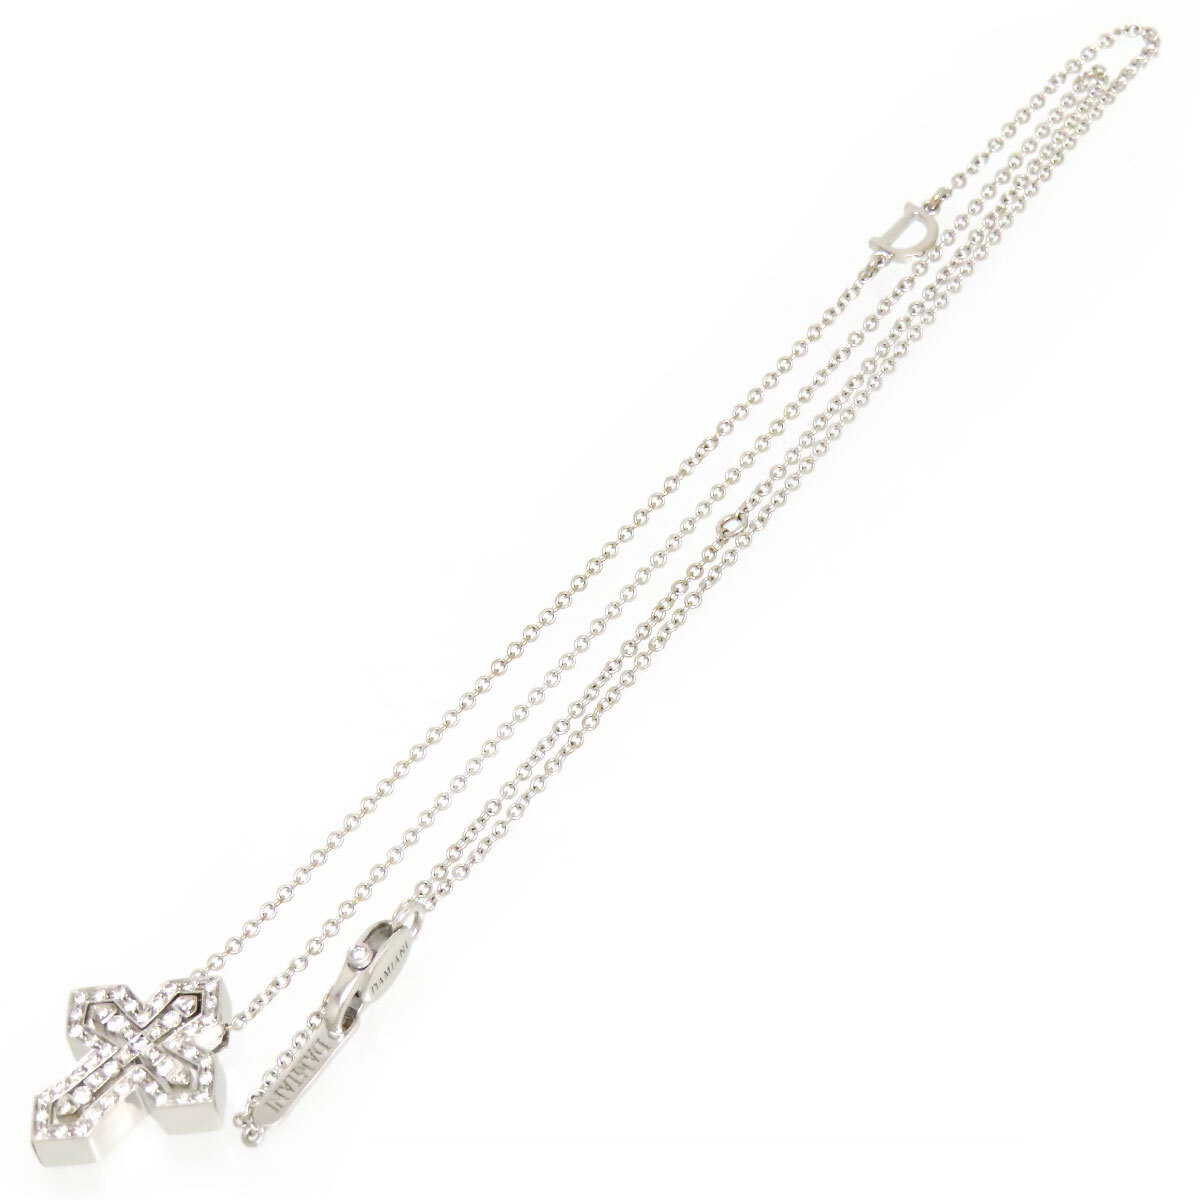  Damiani bell Epo k Crown necklace S 20089078 750 (K18WG) unisex Damiani used [ jewelry ]